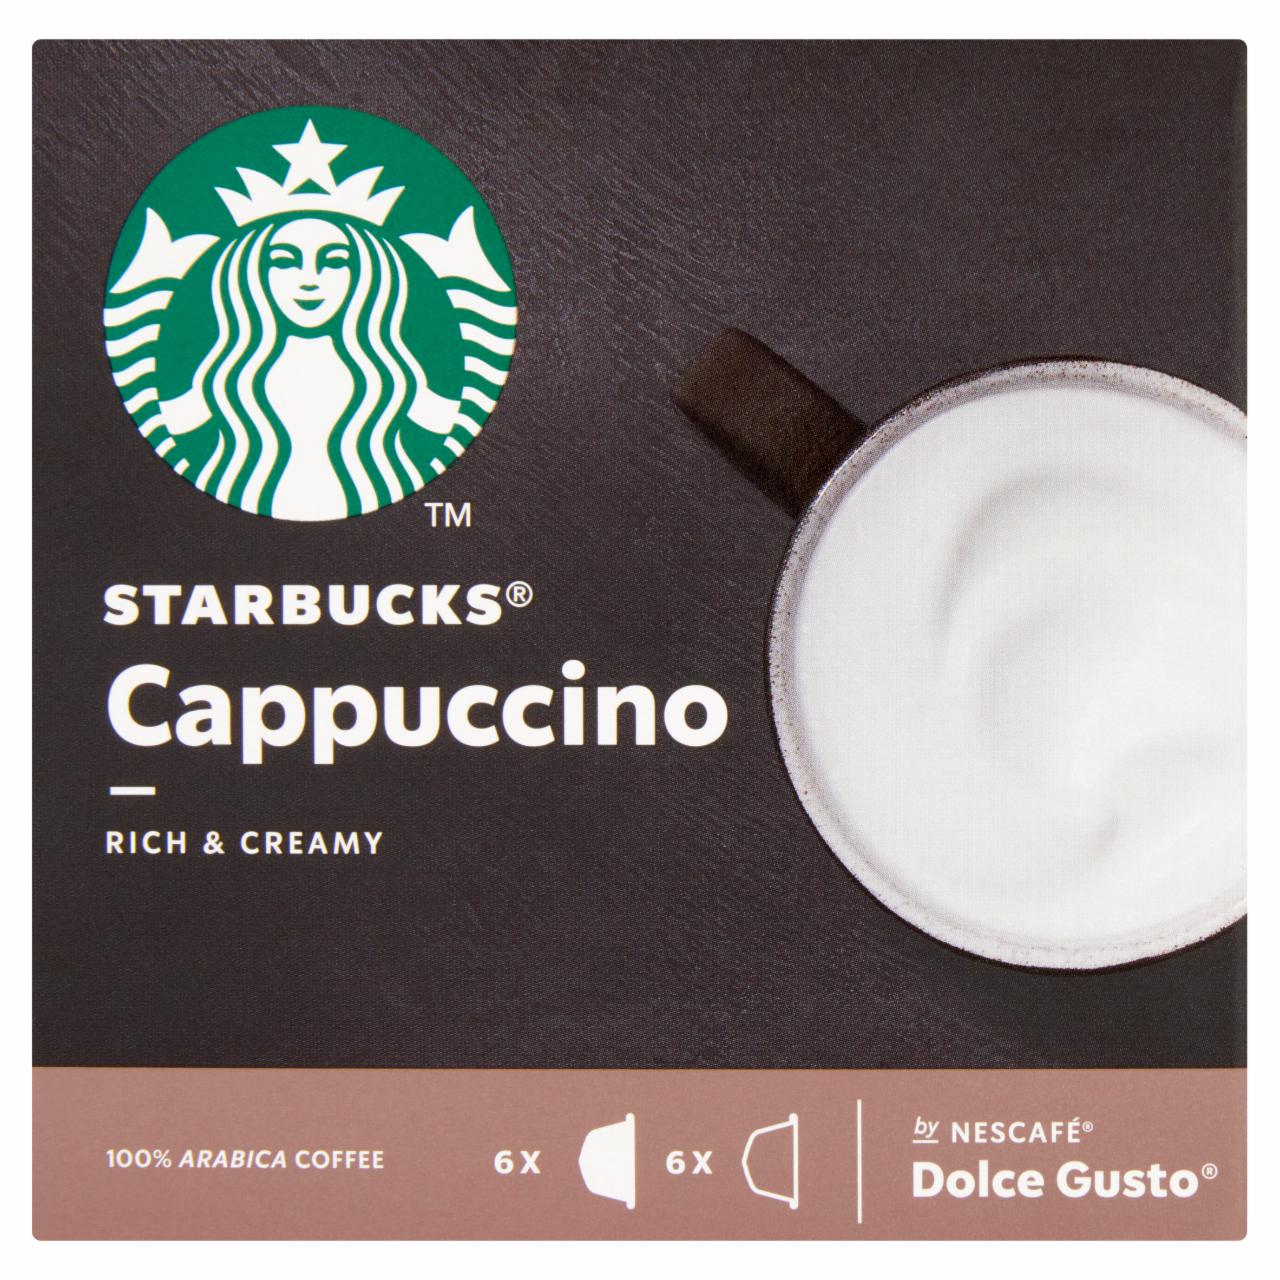 Képek - Starbucks by Nescafé Dolce Gusto Cappuccino tej- és kávékapszula 12 db/6 csésze 120 g